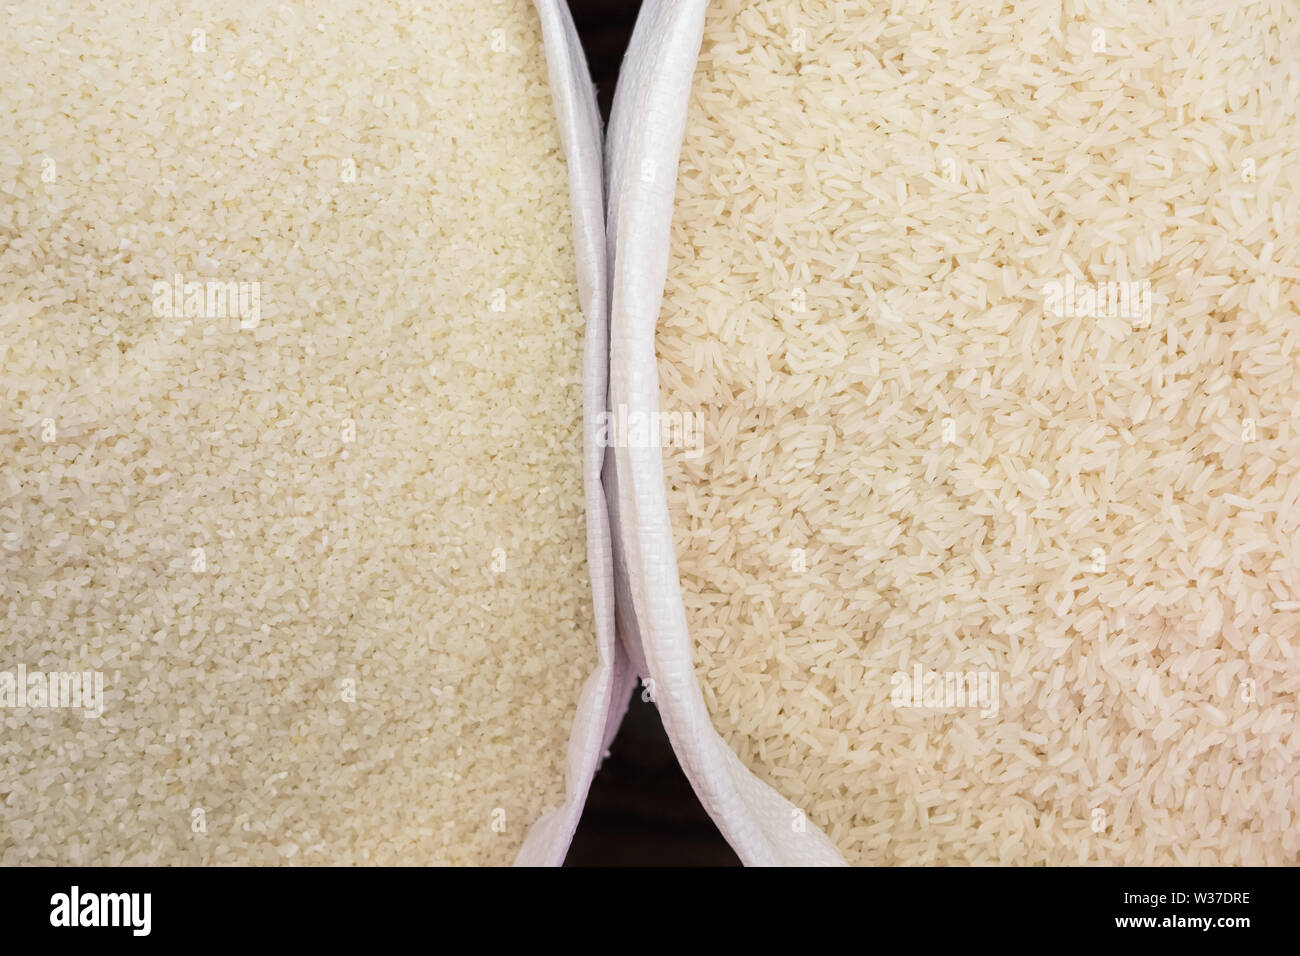 Le riz à grain court et à l'arrière-plan Vue de dessus. Décrochage du riz au marché Banque D'Images